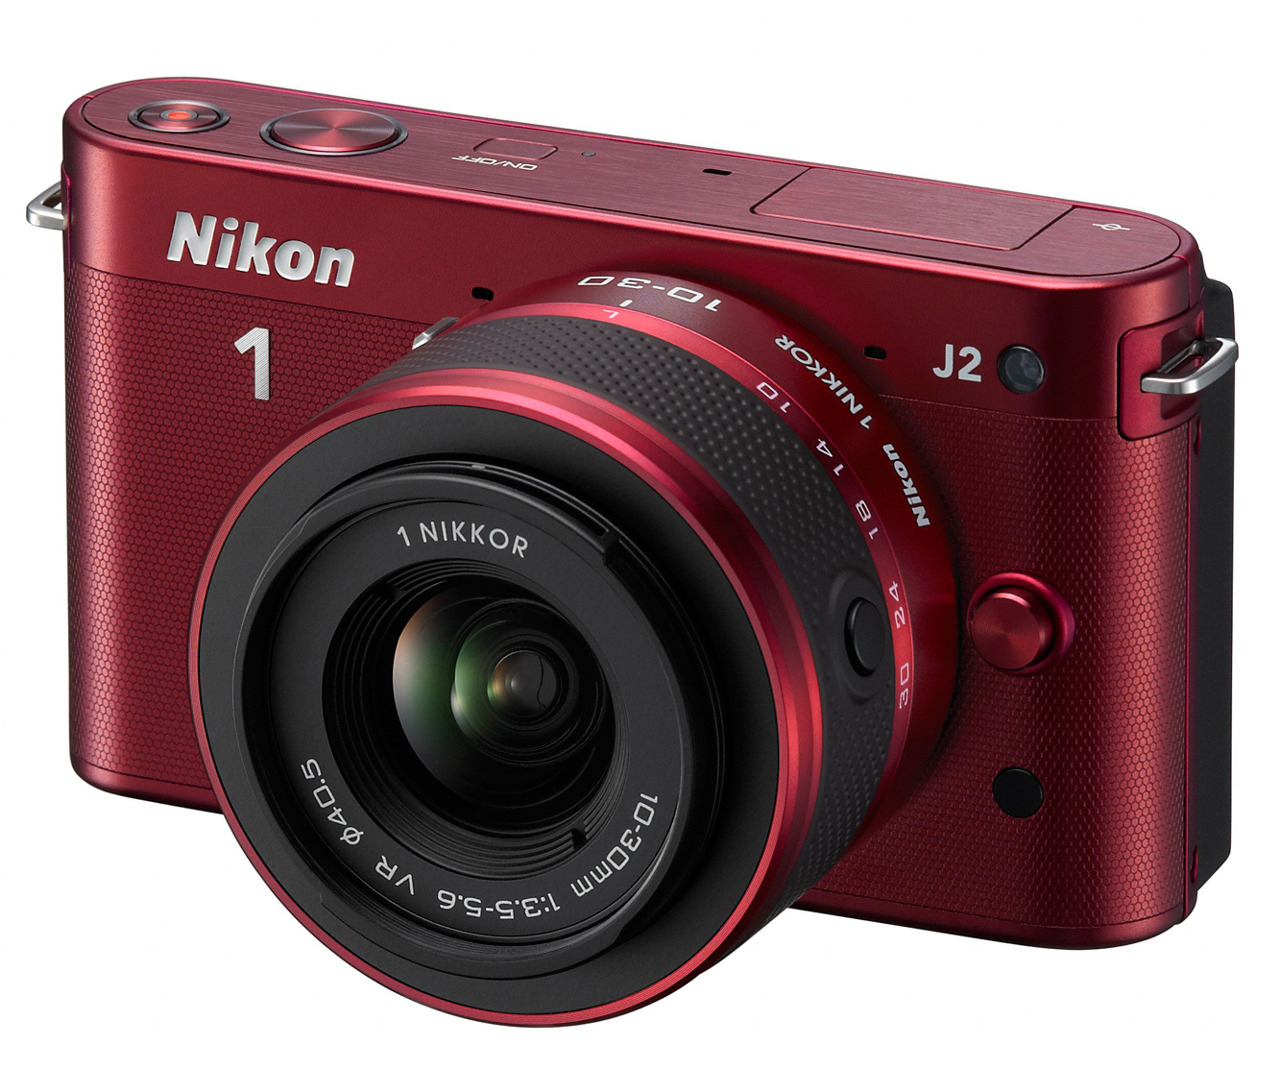 ニコン、6色展開のミラーレス一眼「Nikon 1 J2」……2.5倍交換レンズや